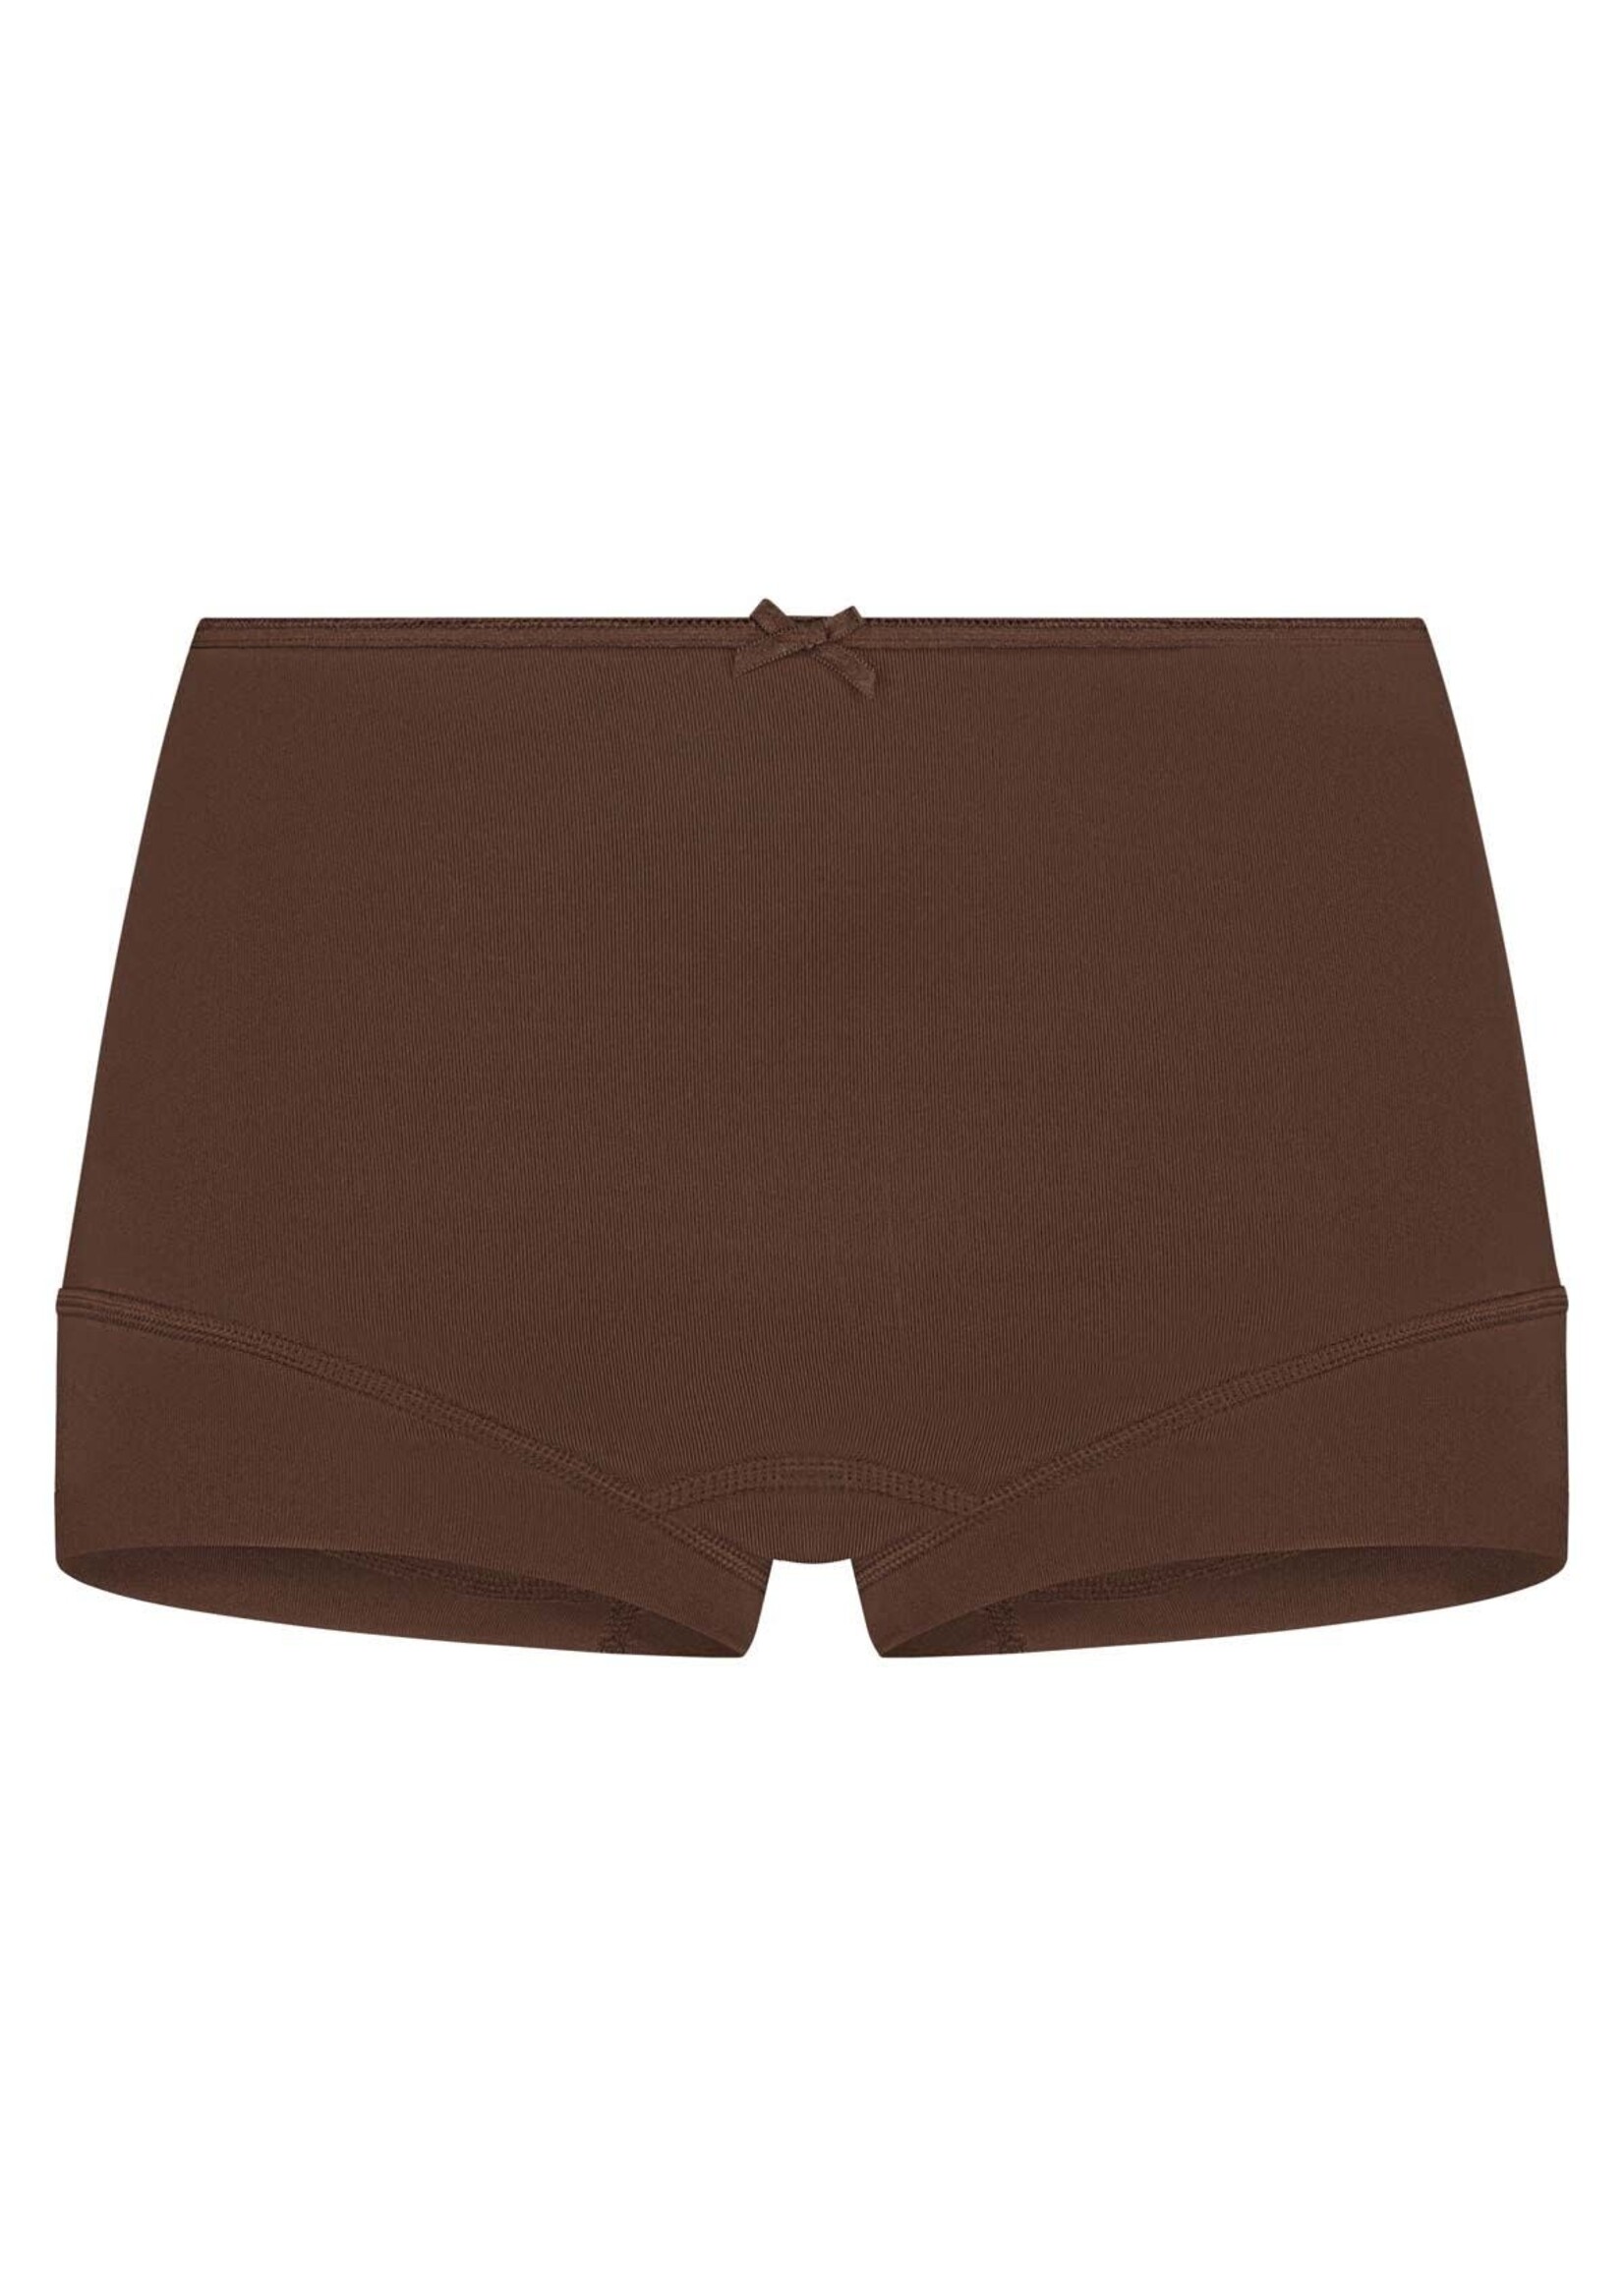 RJ underwear Short Espresso